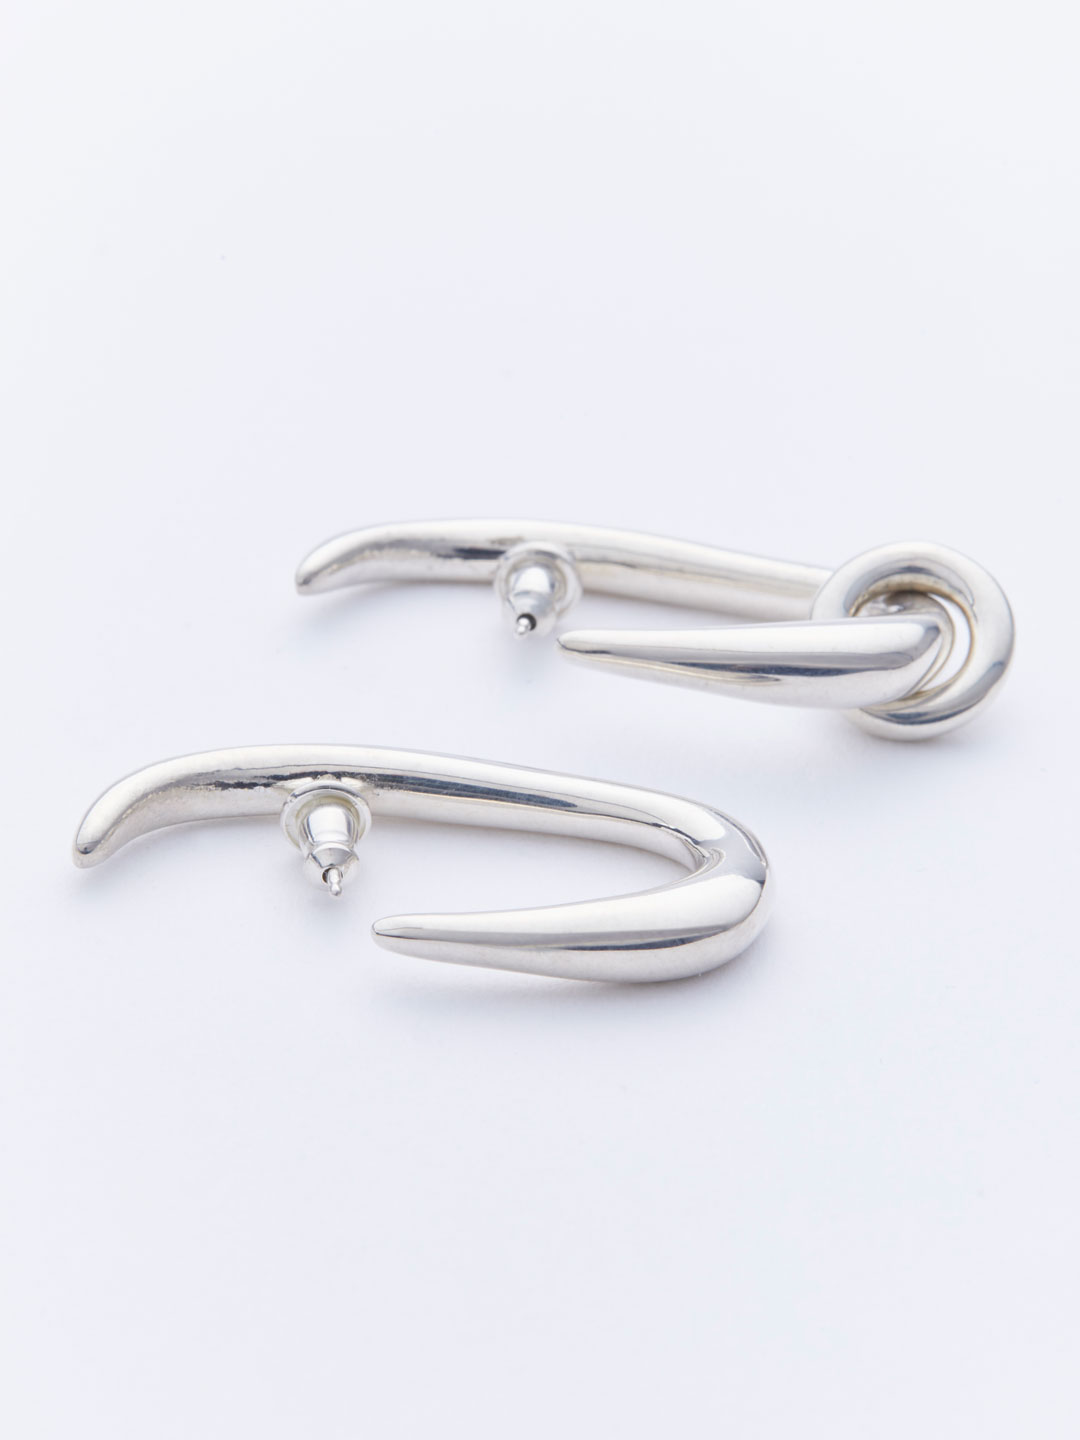 Oval Hoops Pierced Earrings - Silver